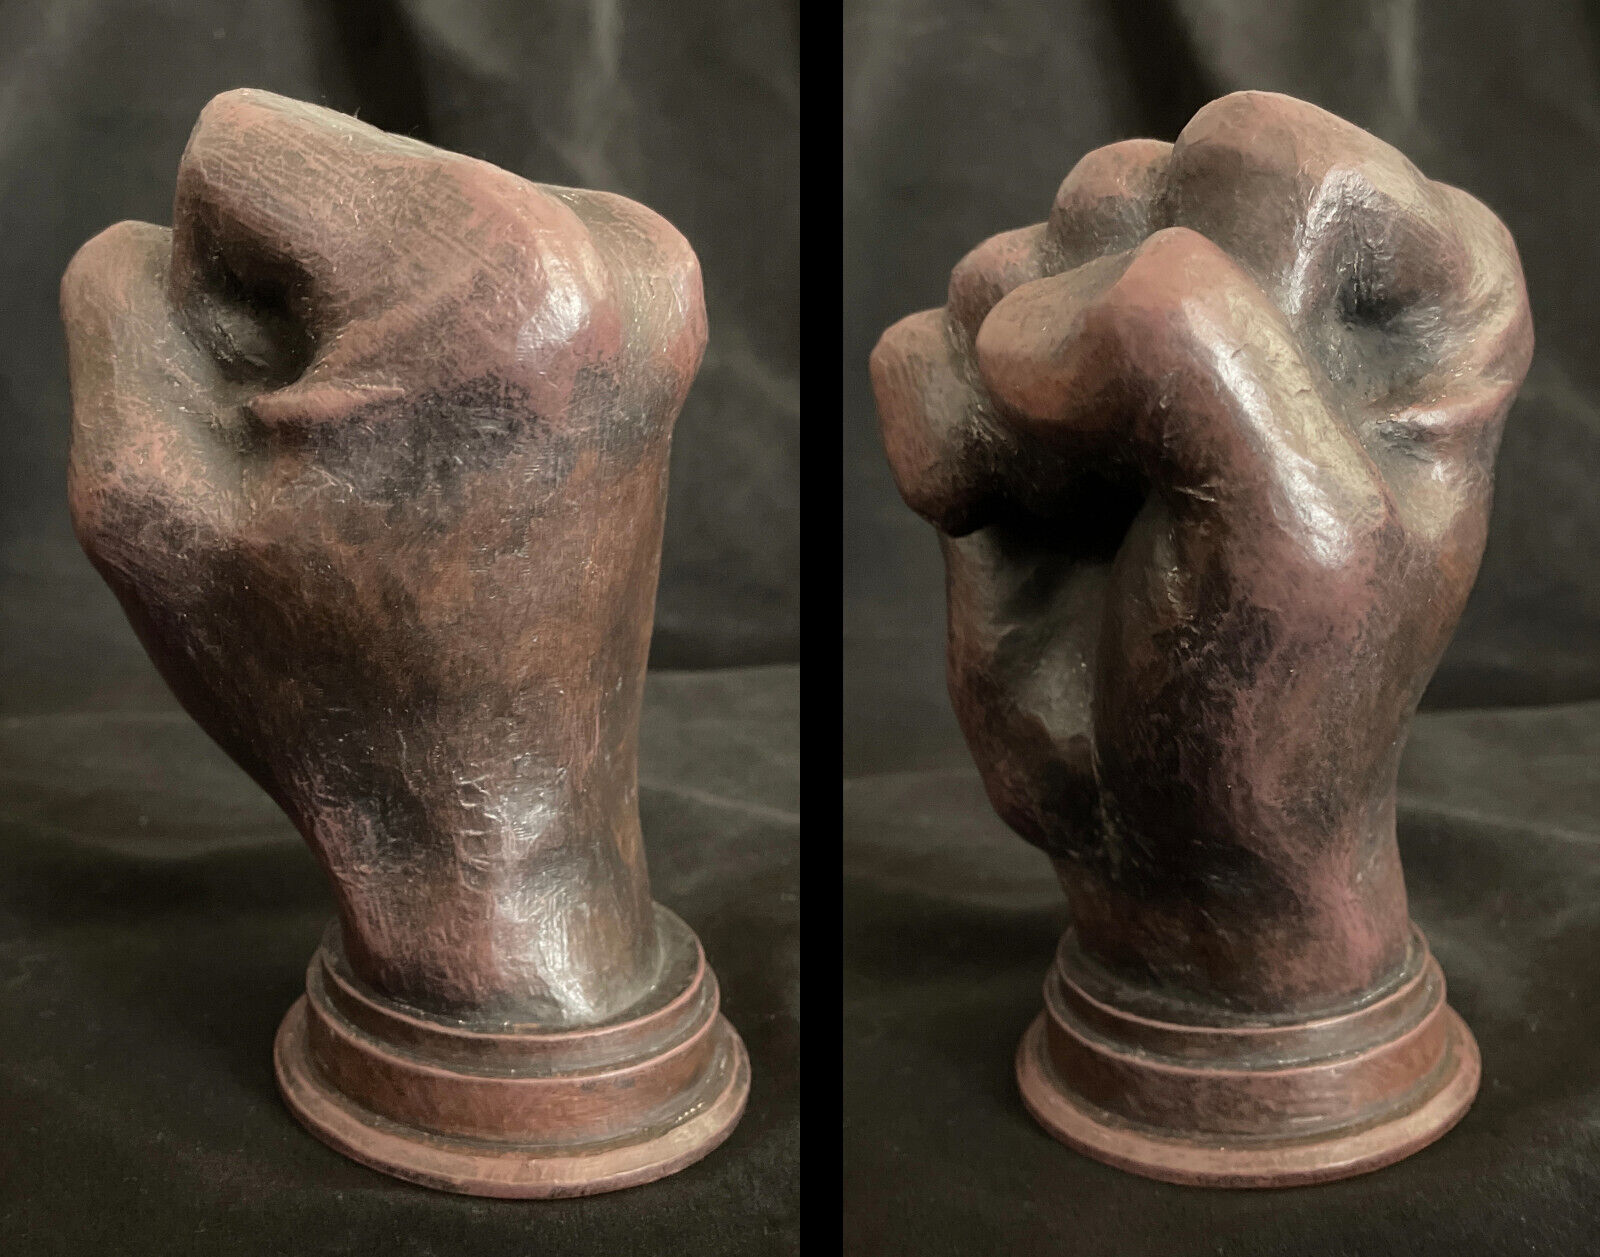 Fist of power statue - Real wood, handmade, life size, ebony/mahogany, heavy